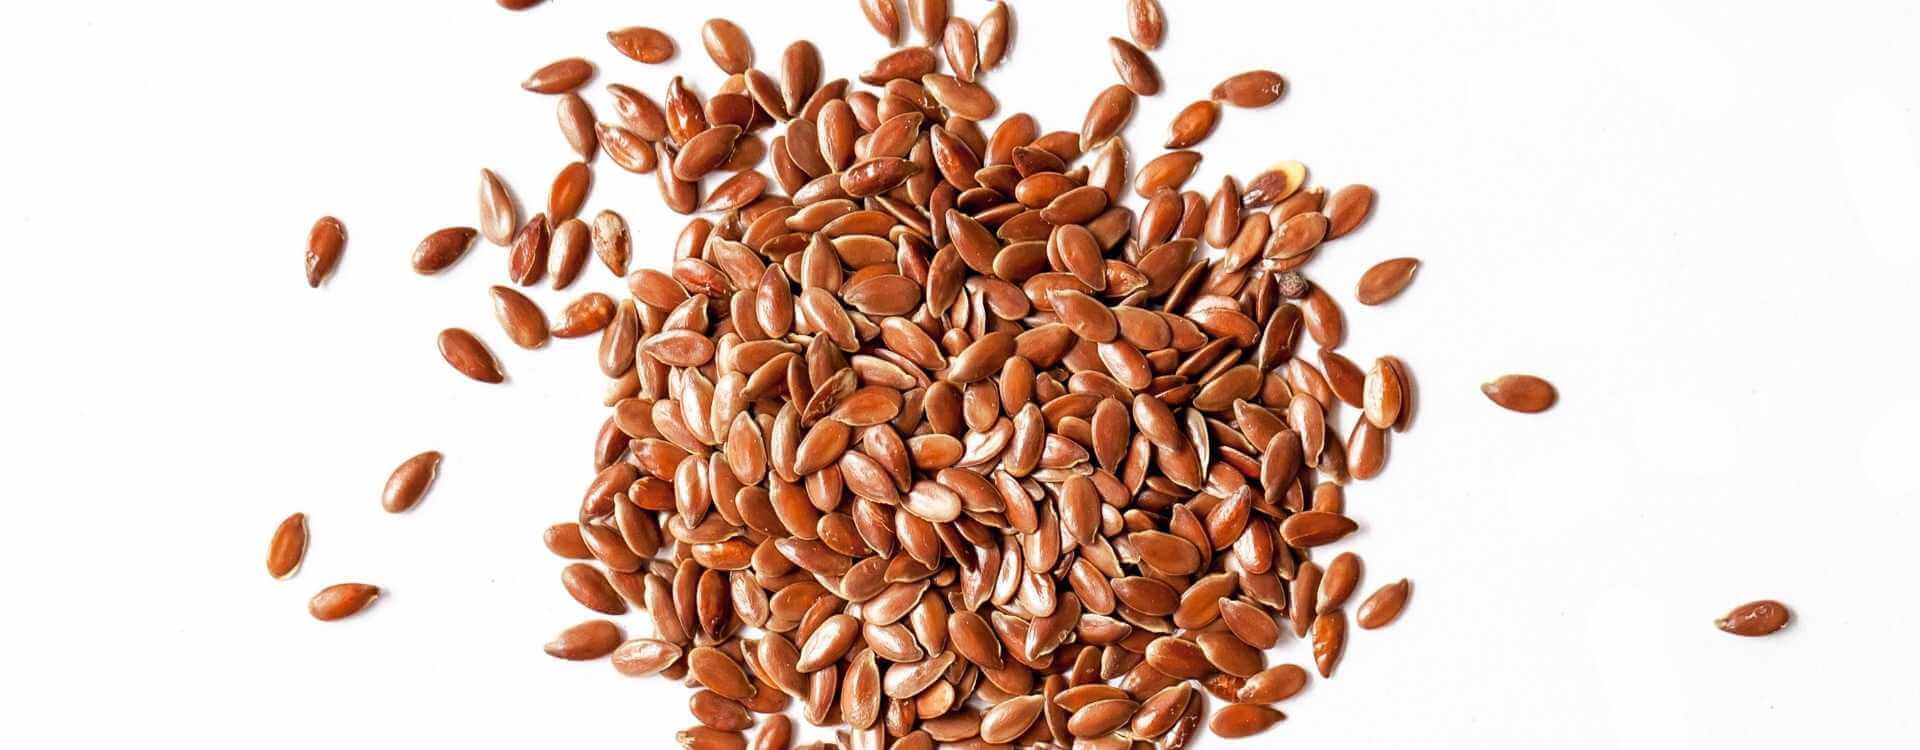 Olio di semi di lino per capelli: usi e benefici